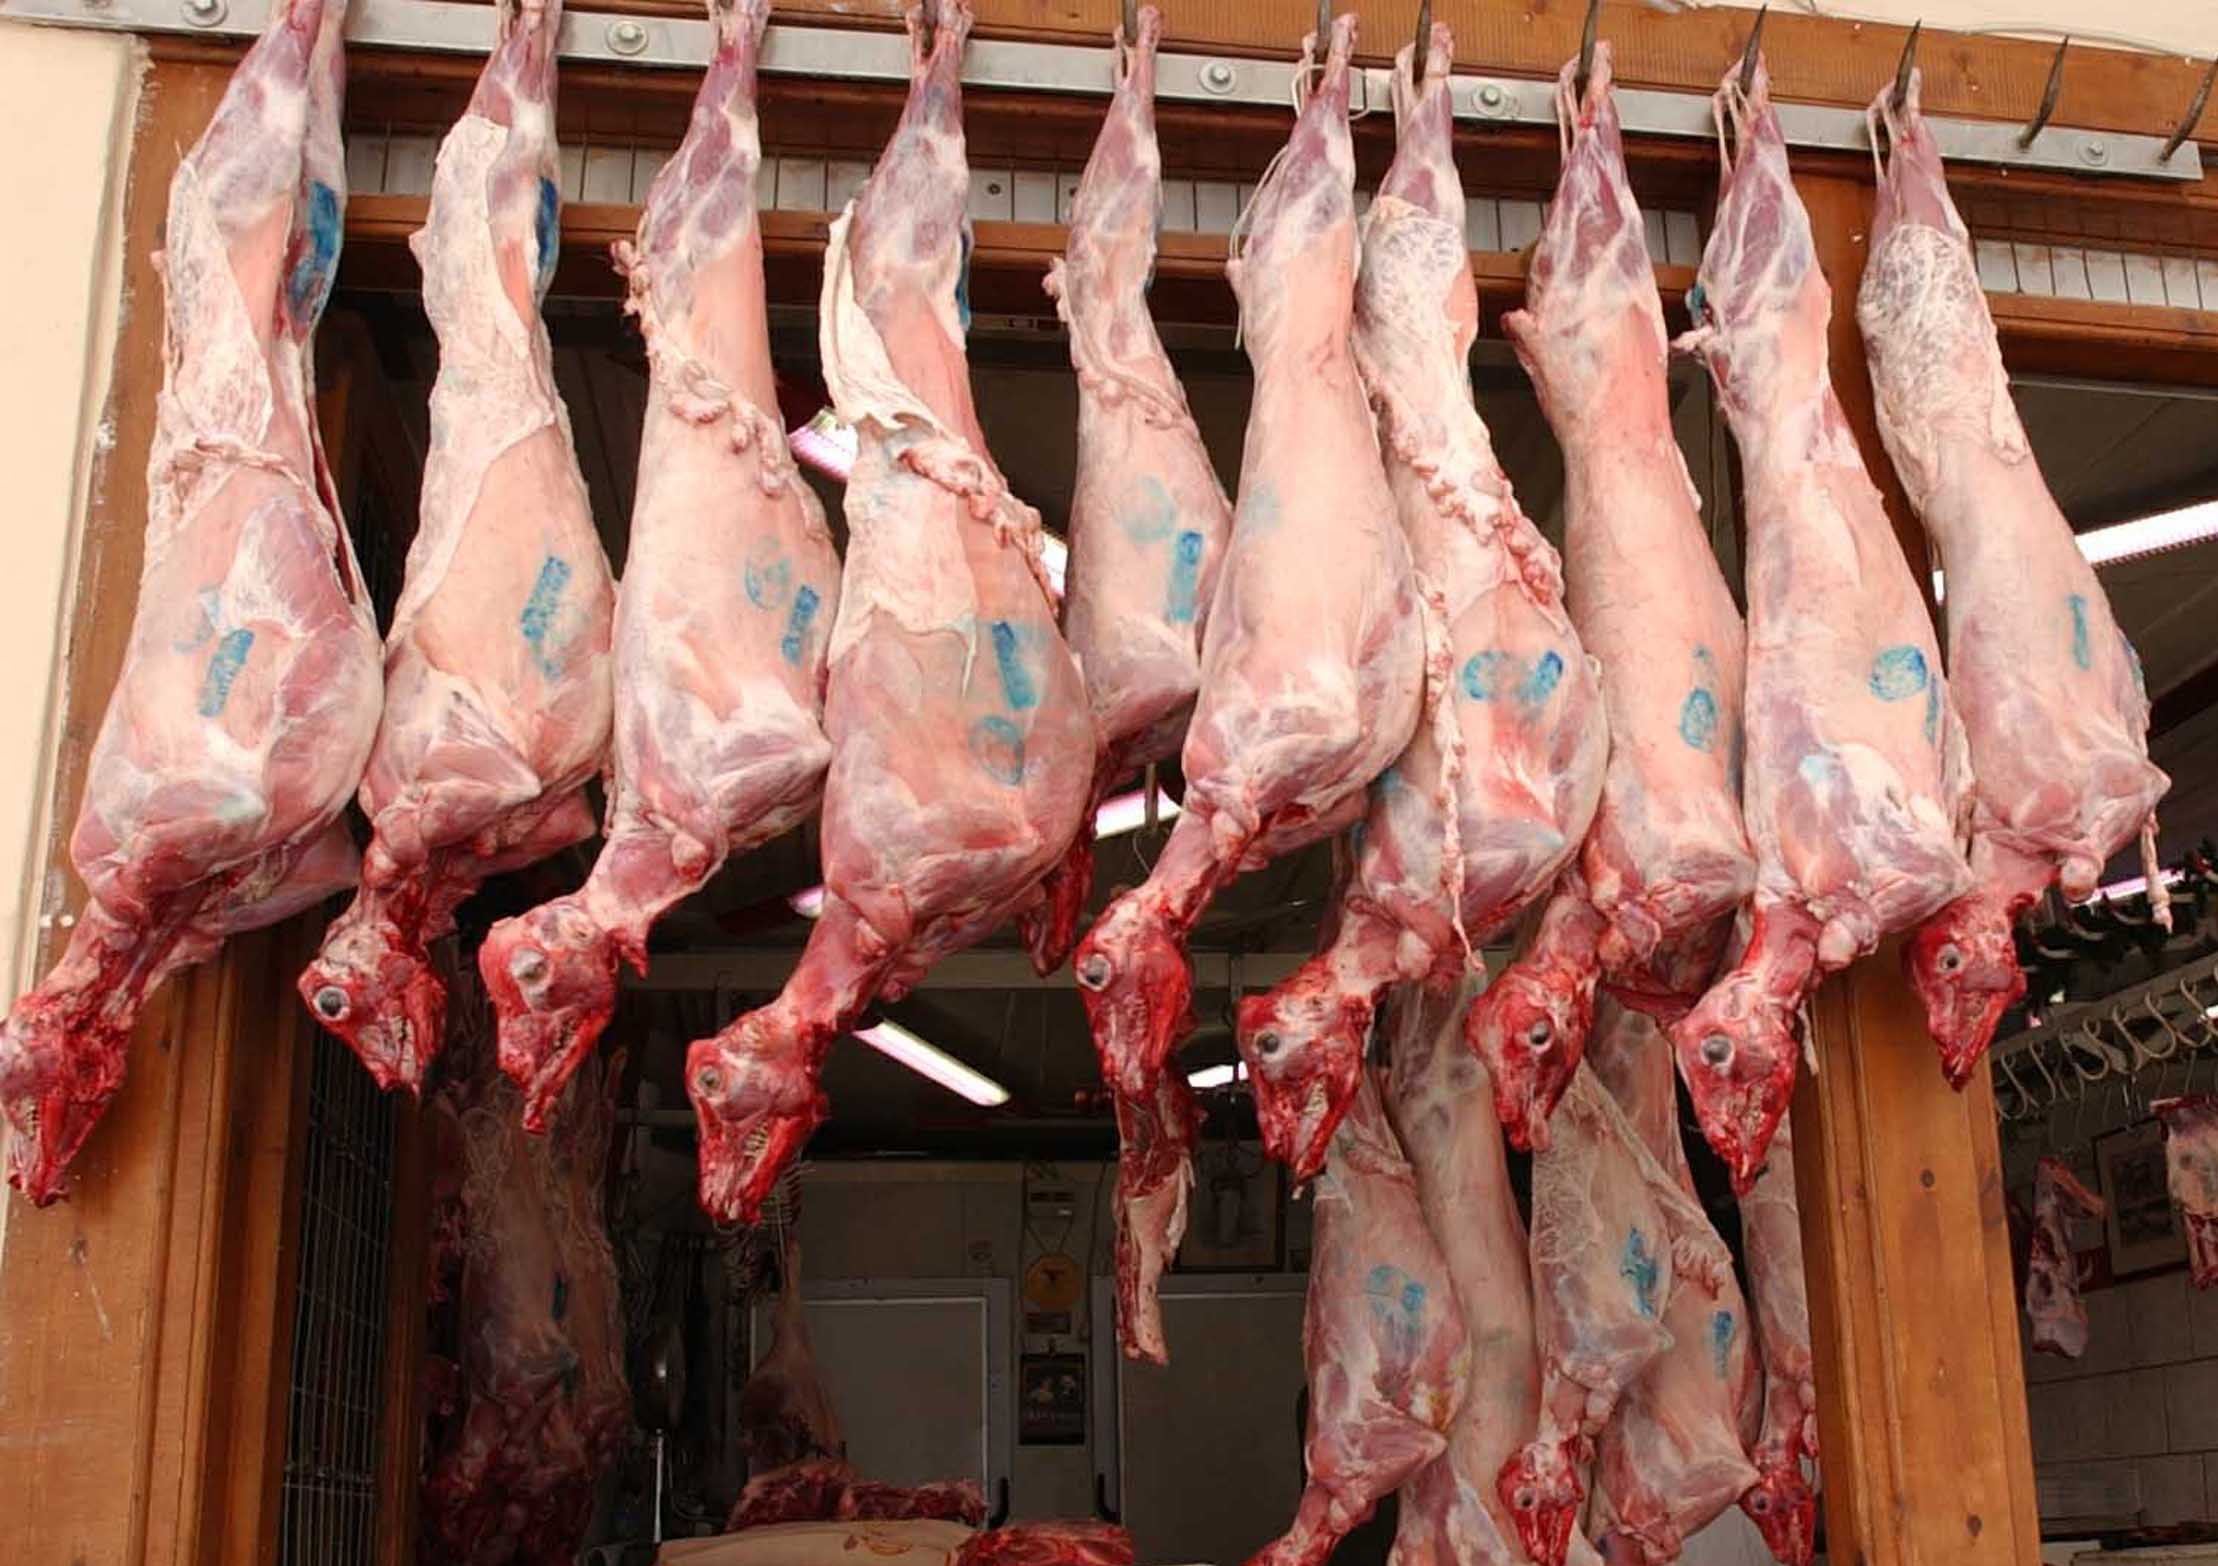 Λιγότερη ποσότητα κρέατος αγοράζουν οι καταναλωτές φέτος στη Λάρισα